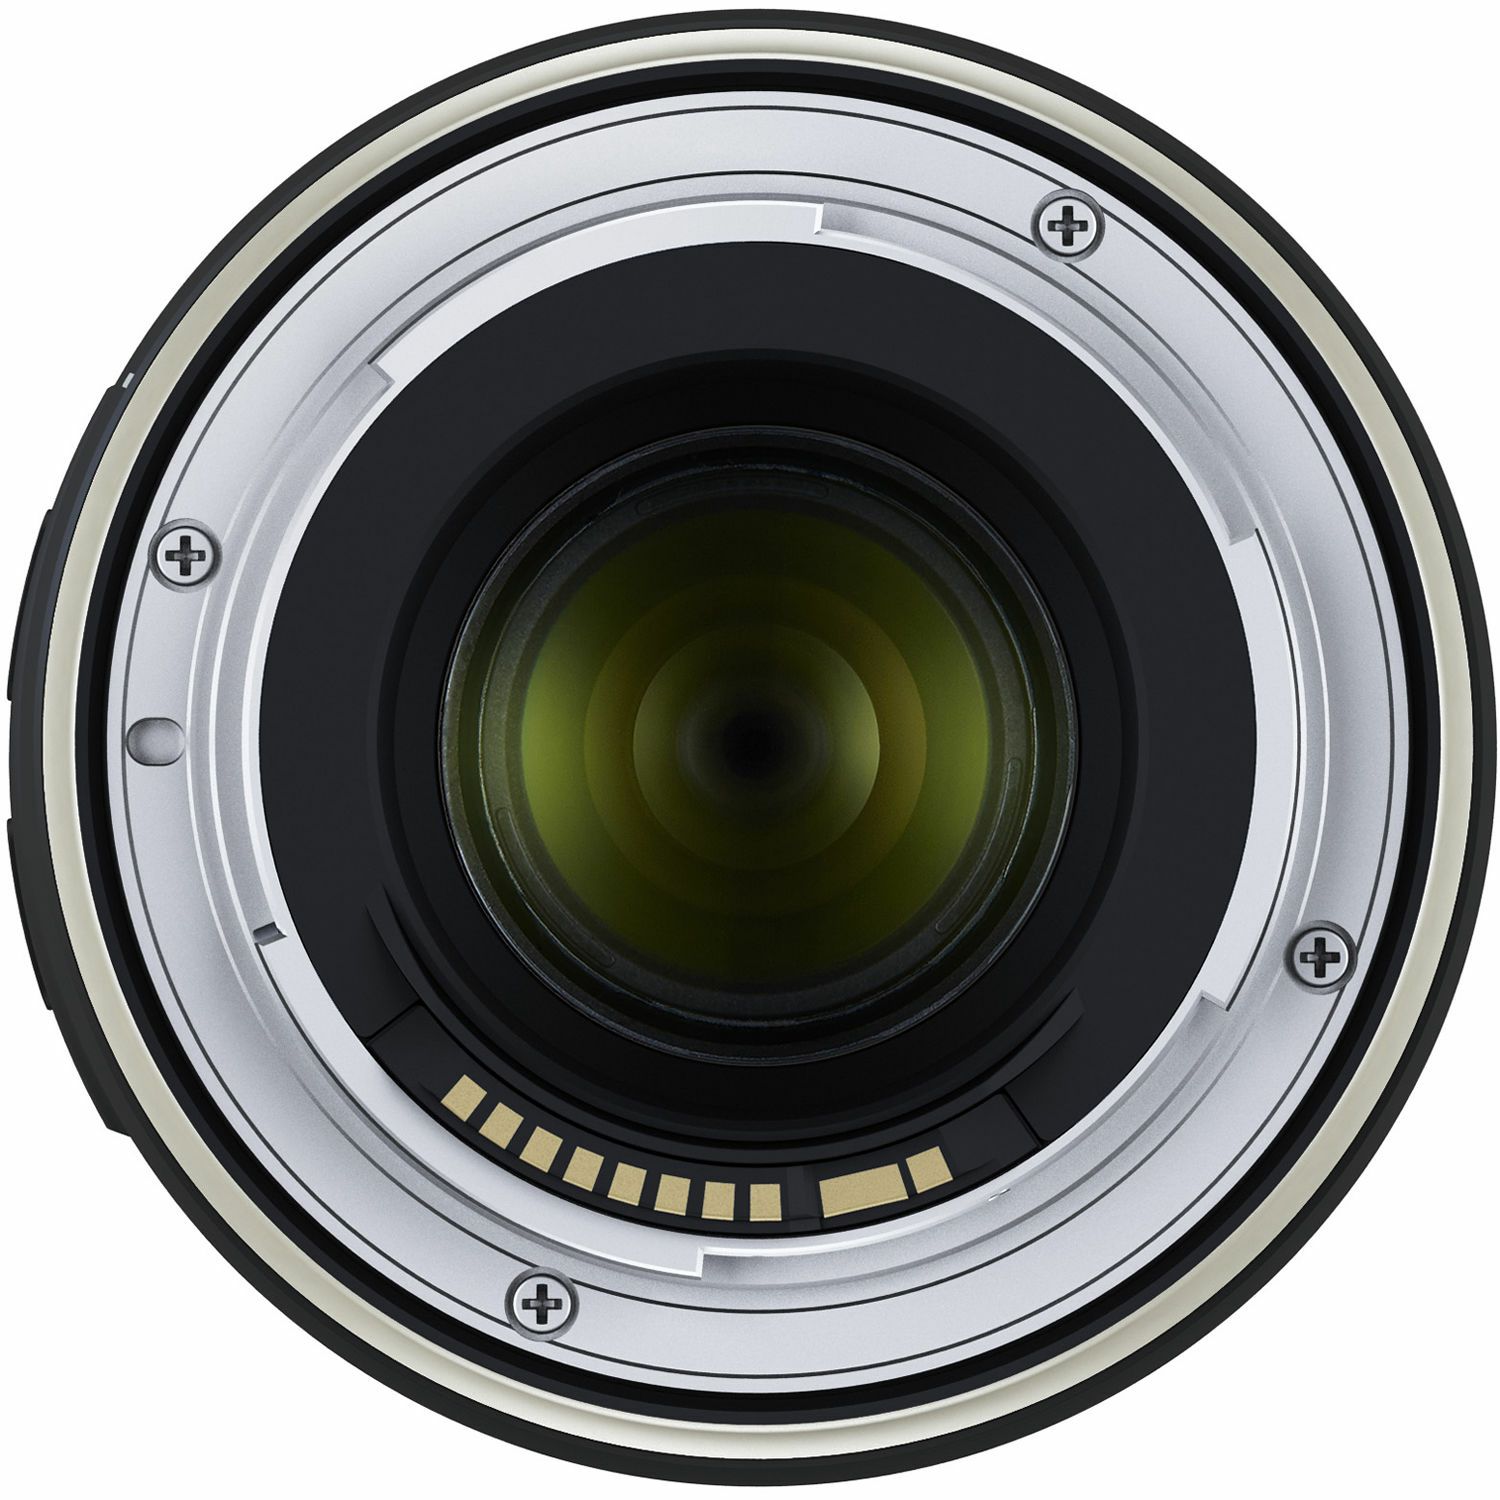 Tamron 70-210mm f/4 Di VC USD telefoto objektiv za Canon EF (A034E)